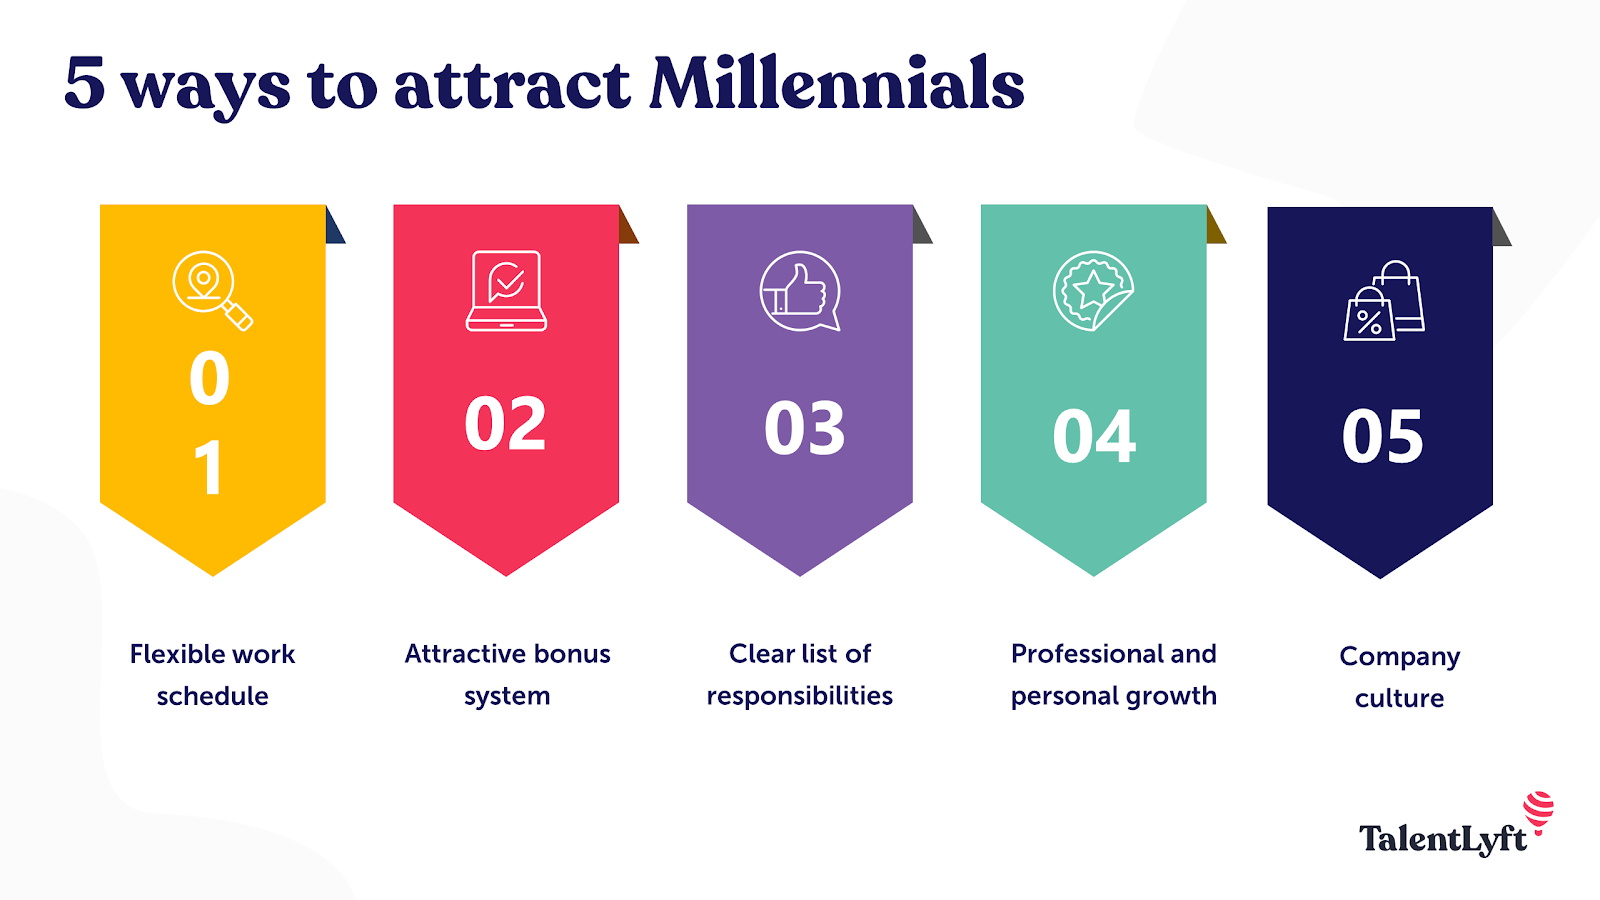 5 ways to attract generation Y Millennials